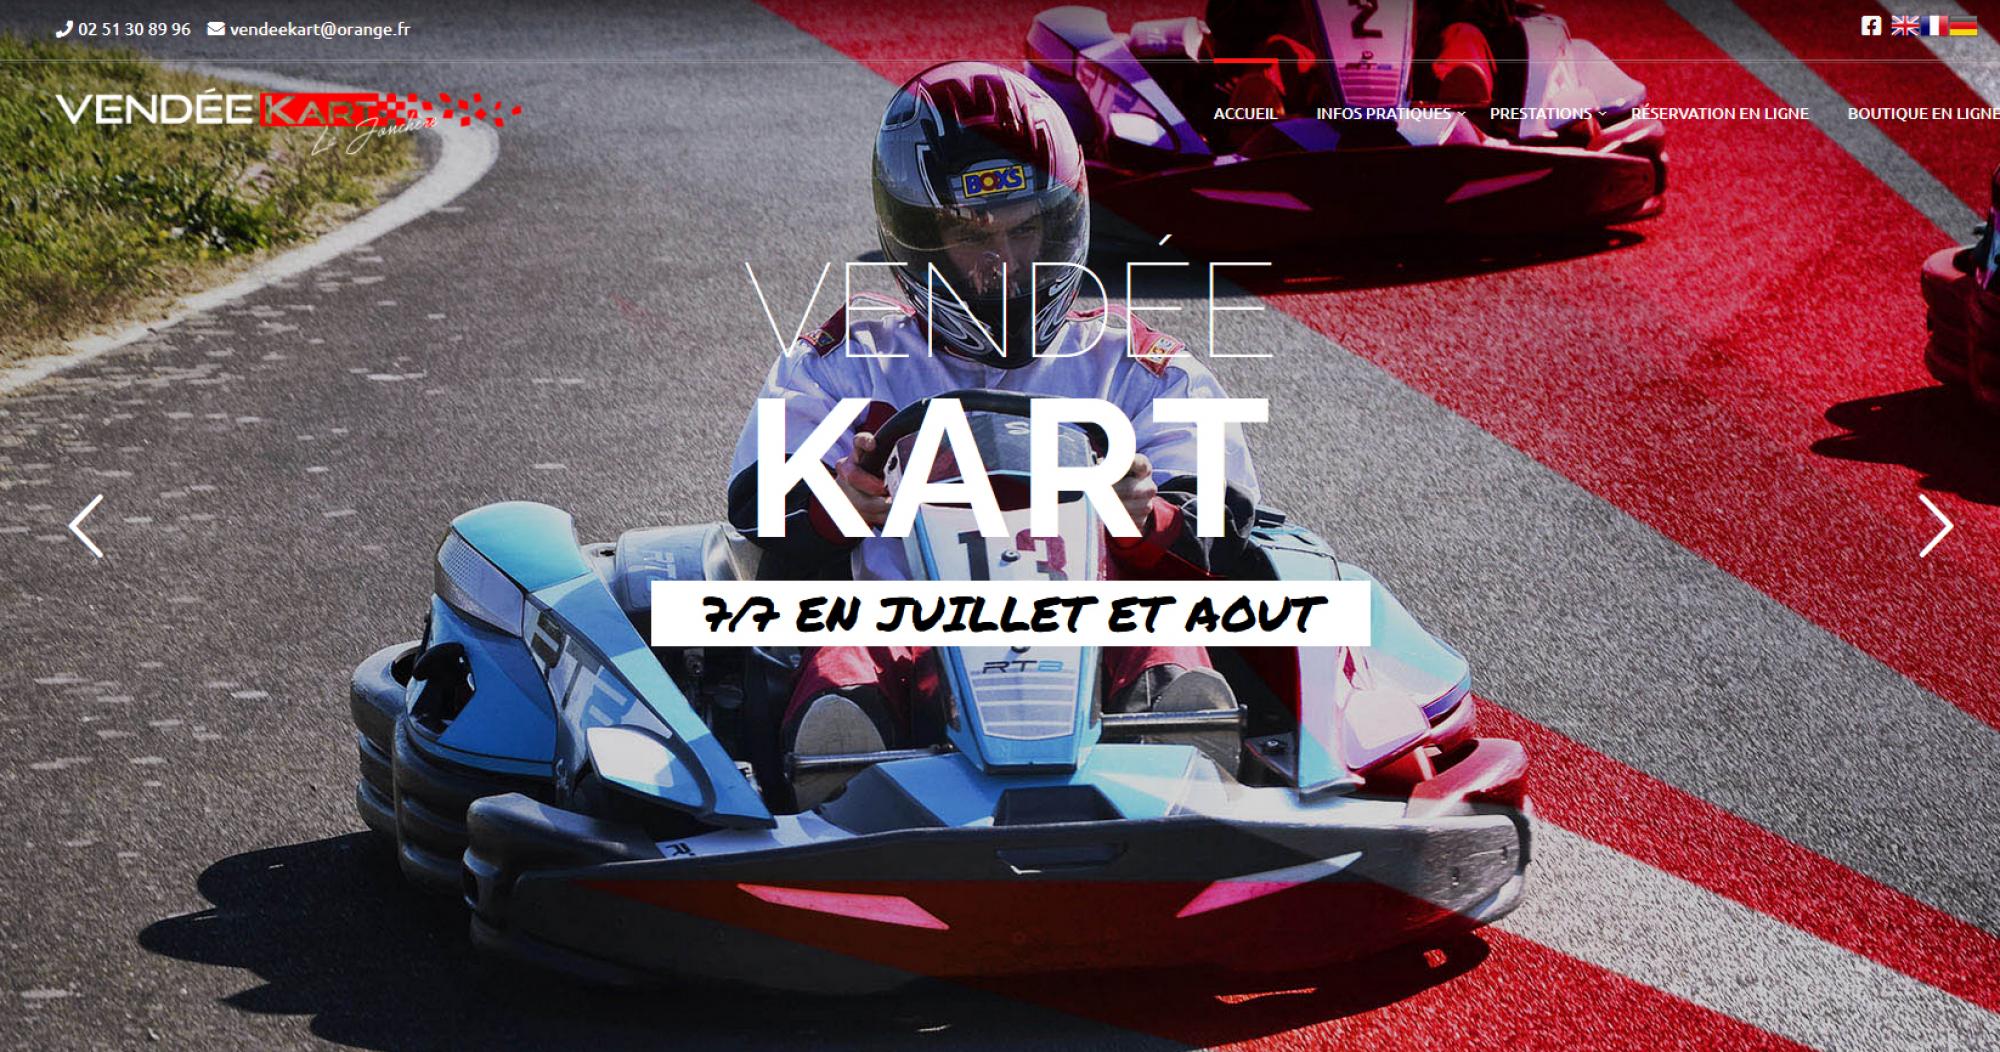 Circuit Vendée Kart